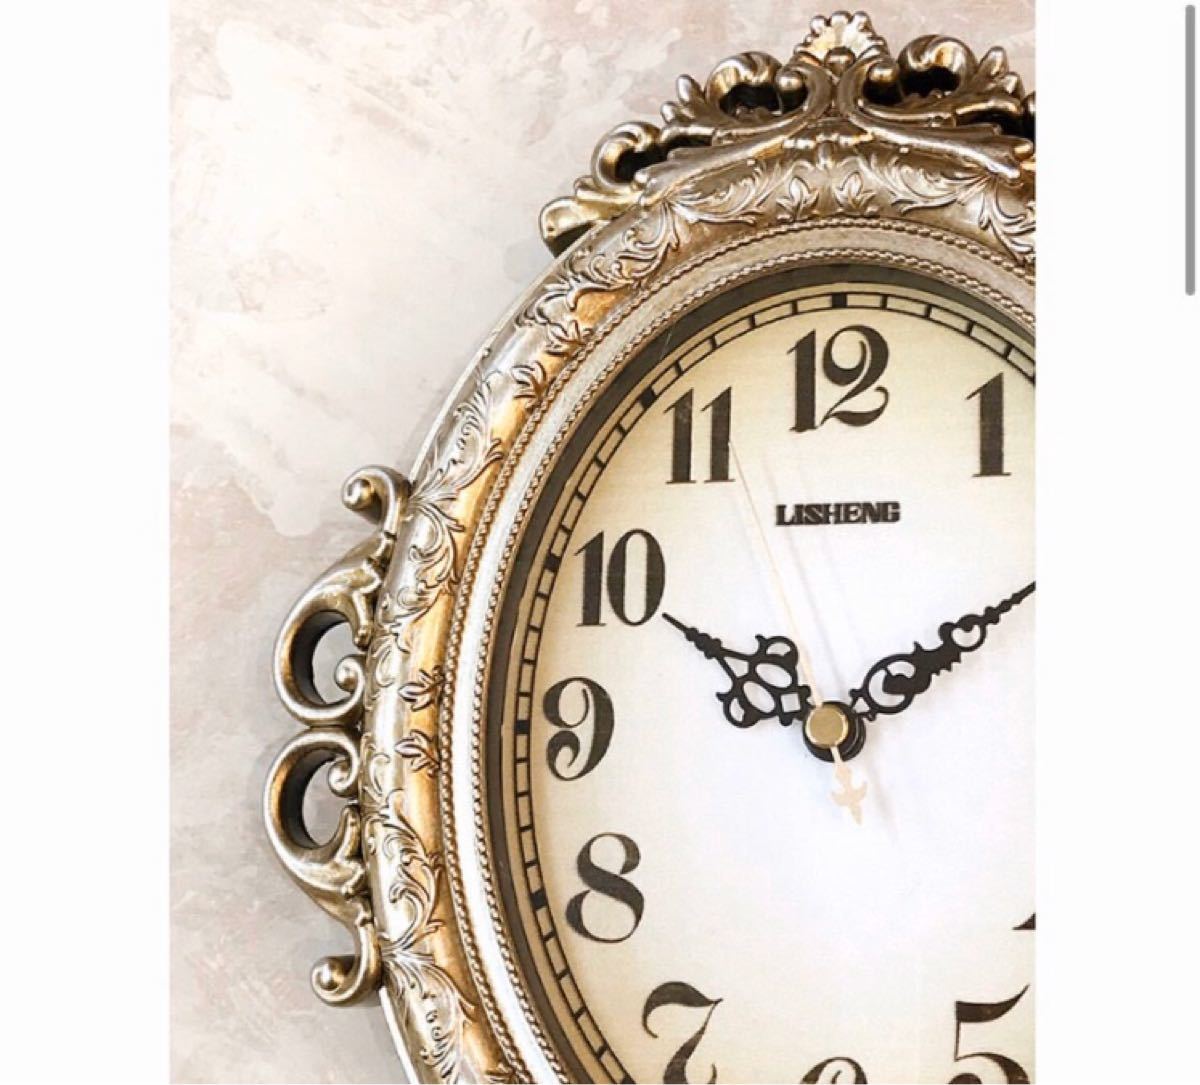 【置時計】ビクトリアンパレス［テーブルクロック（ ネグレスコ S）］置き掛け時計